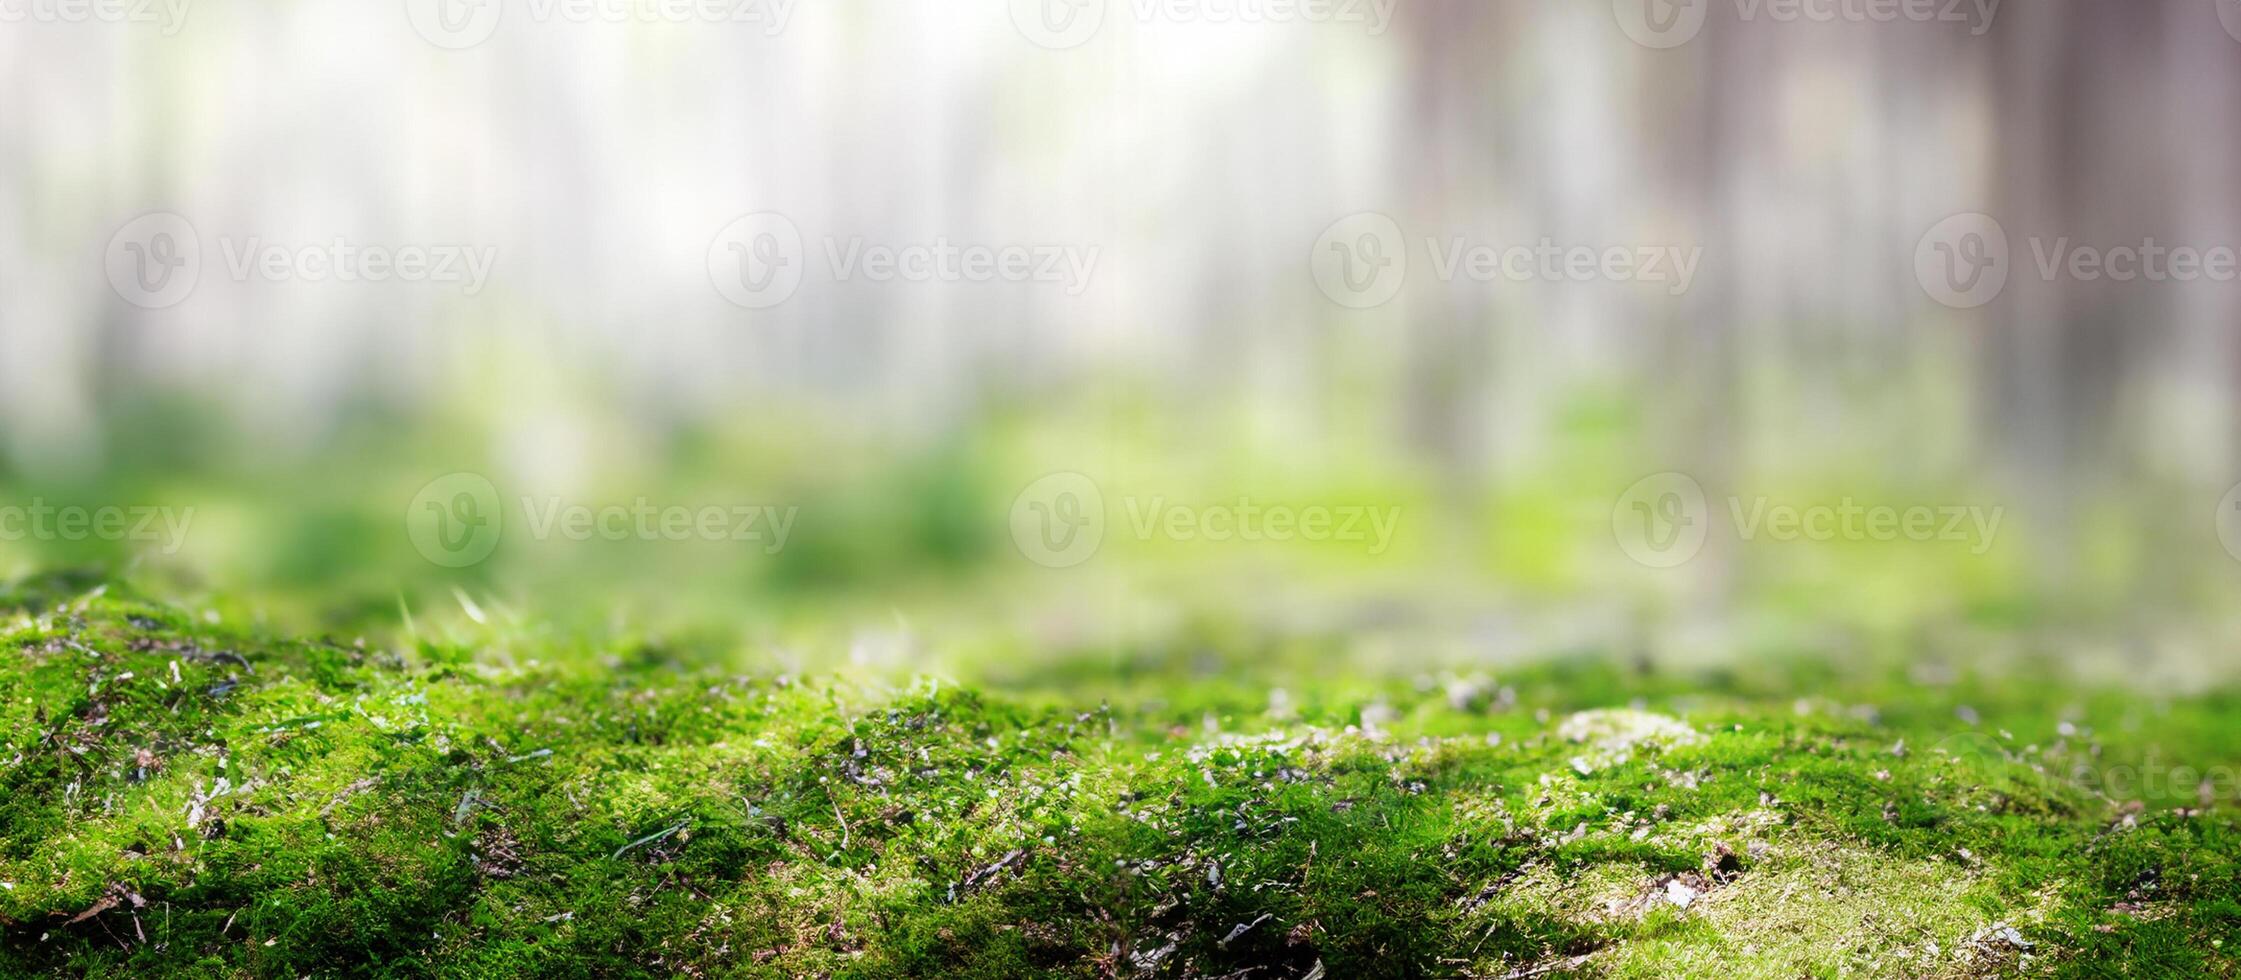 Grün Ökologie Hintergrund foto